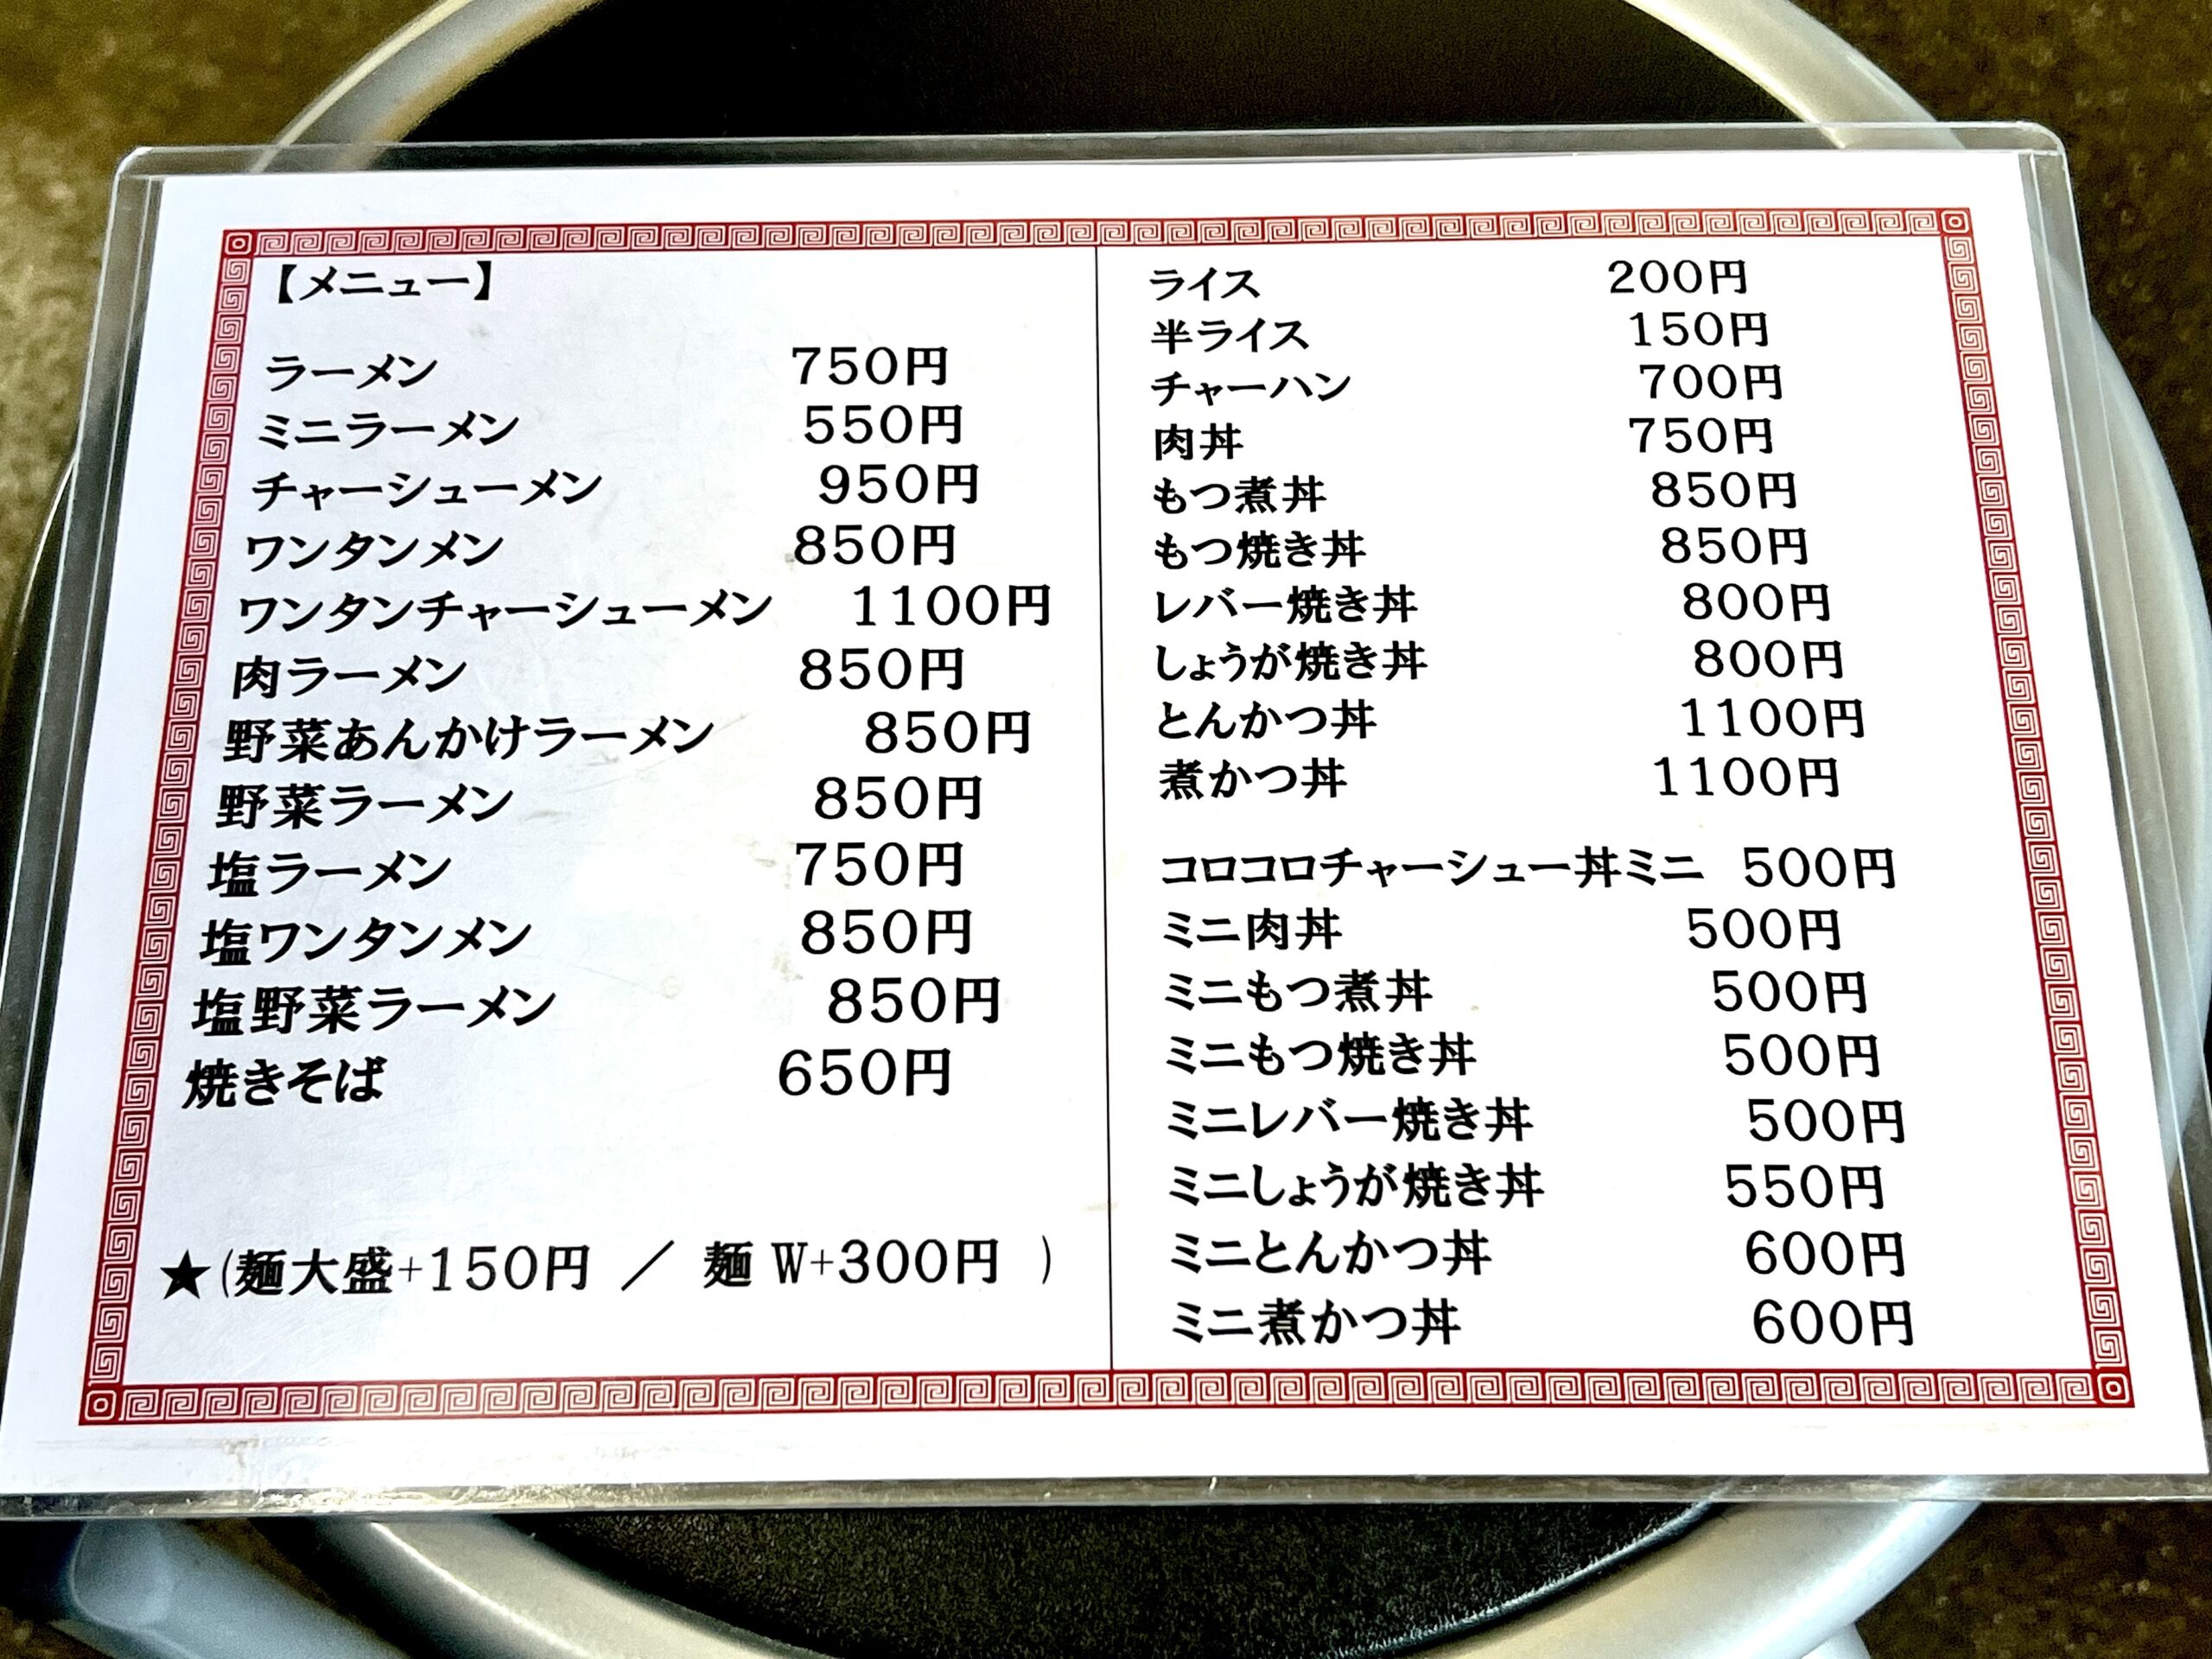 ラーメン・ご飯類のメニュー表